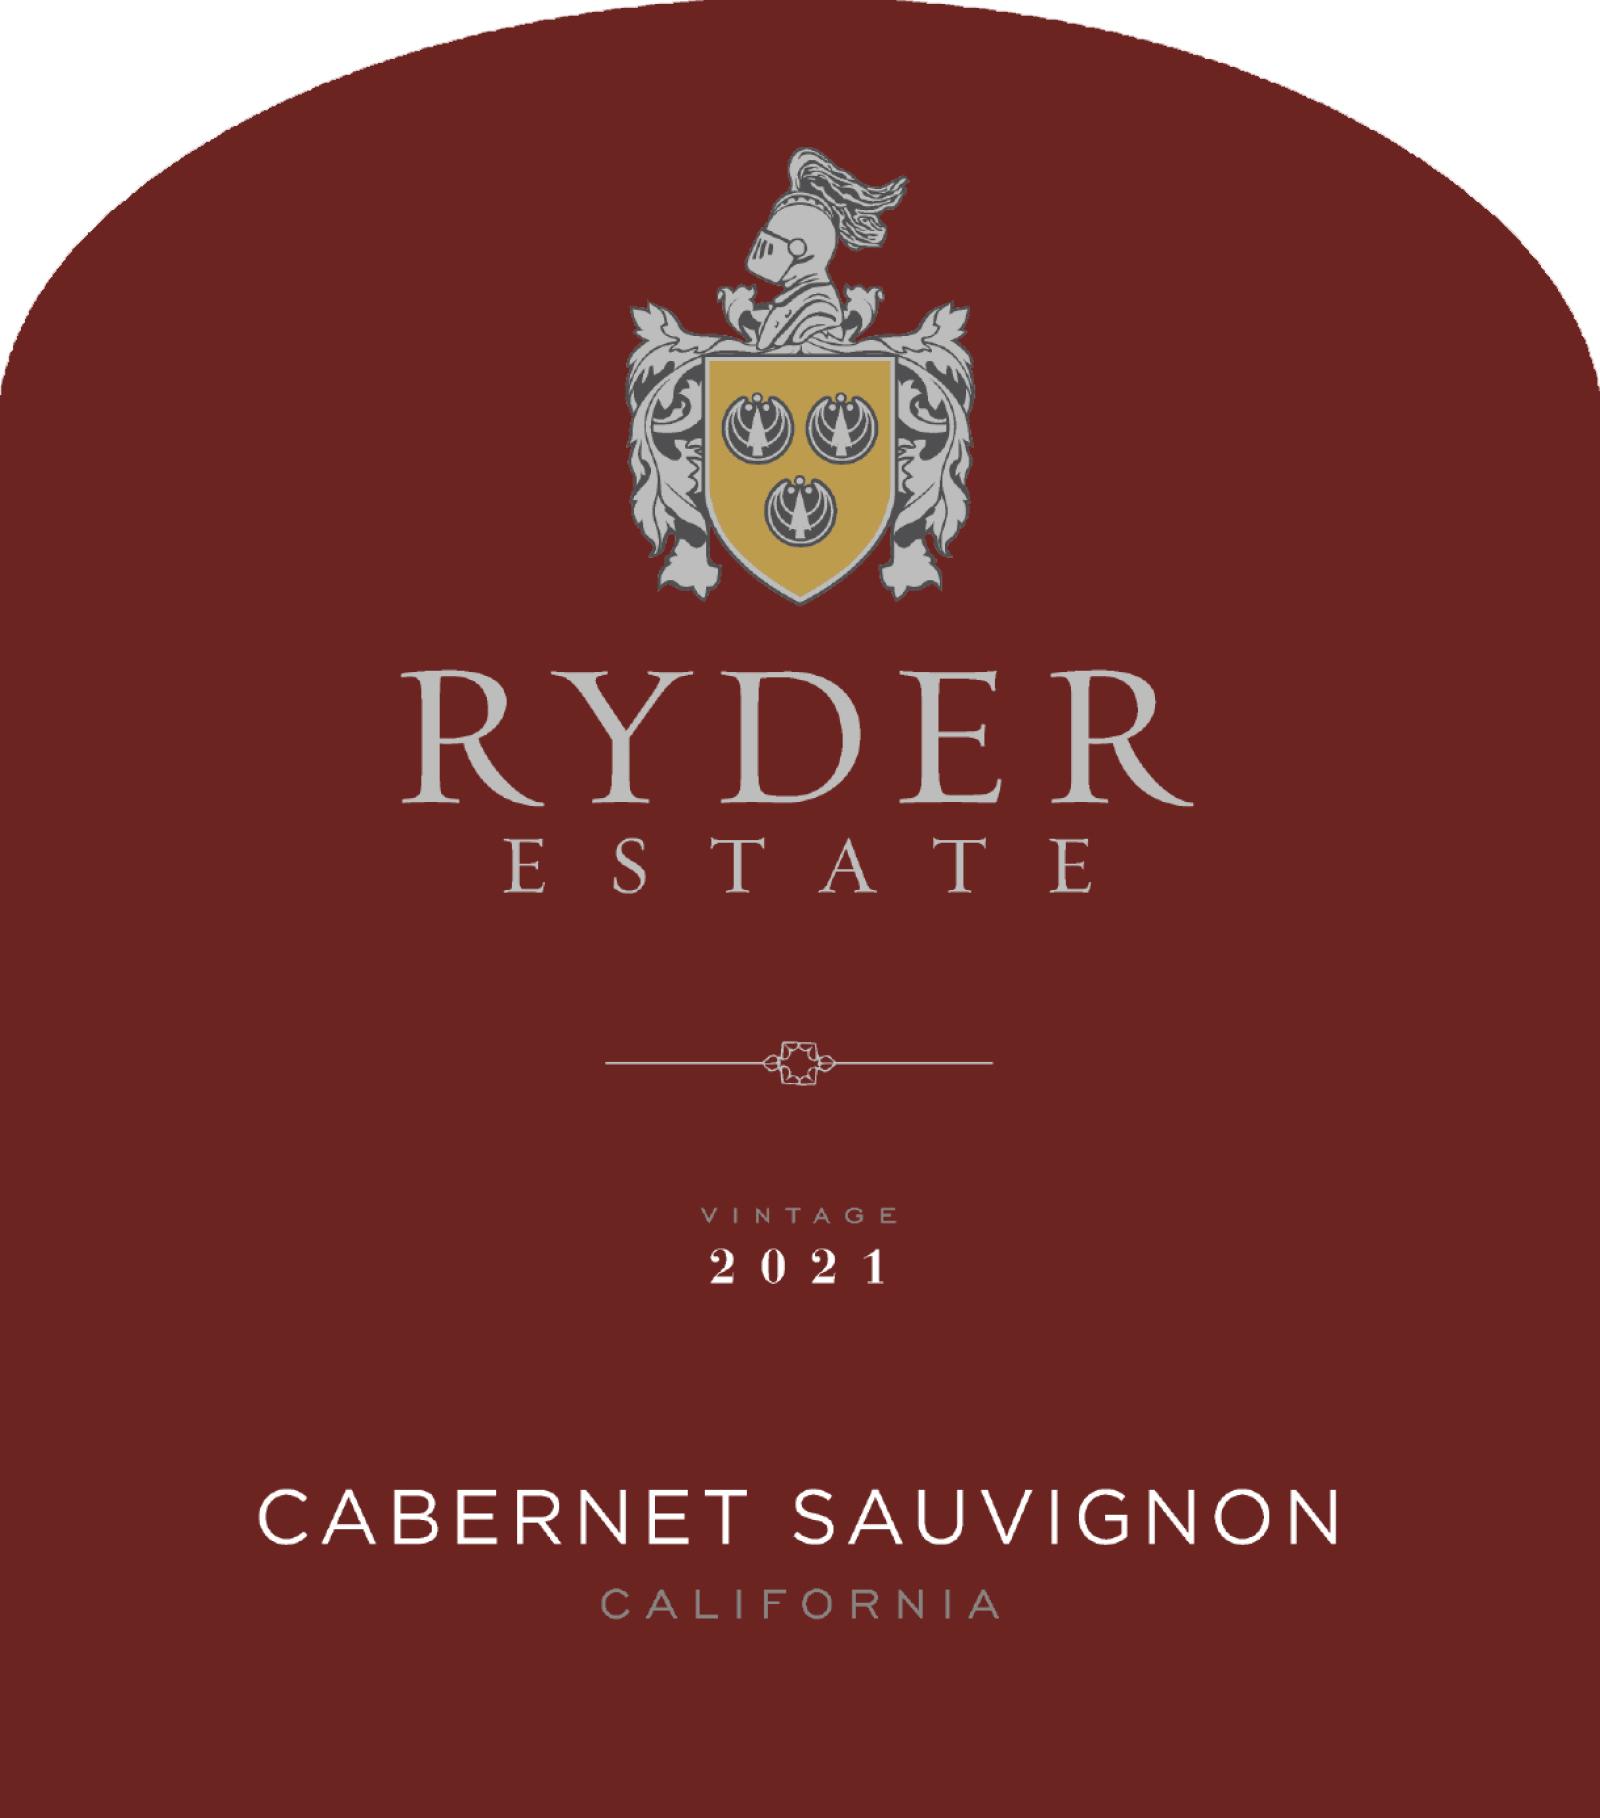 Ryder Estate Cabernet Sauvignon 2021